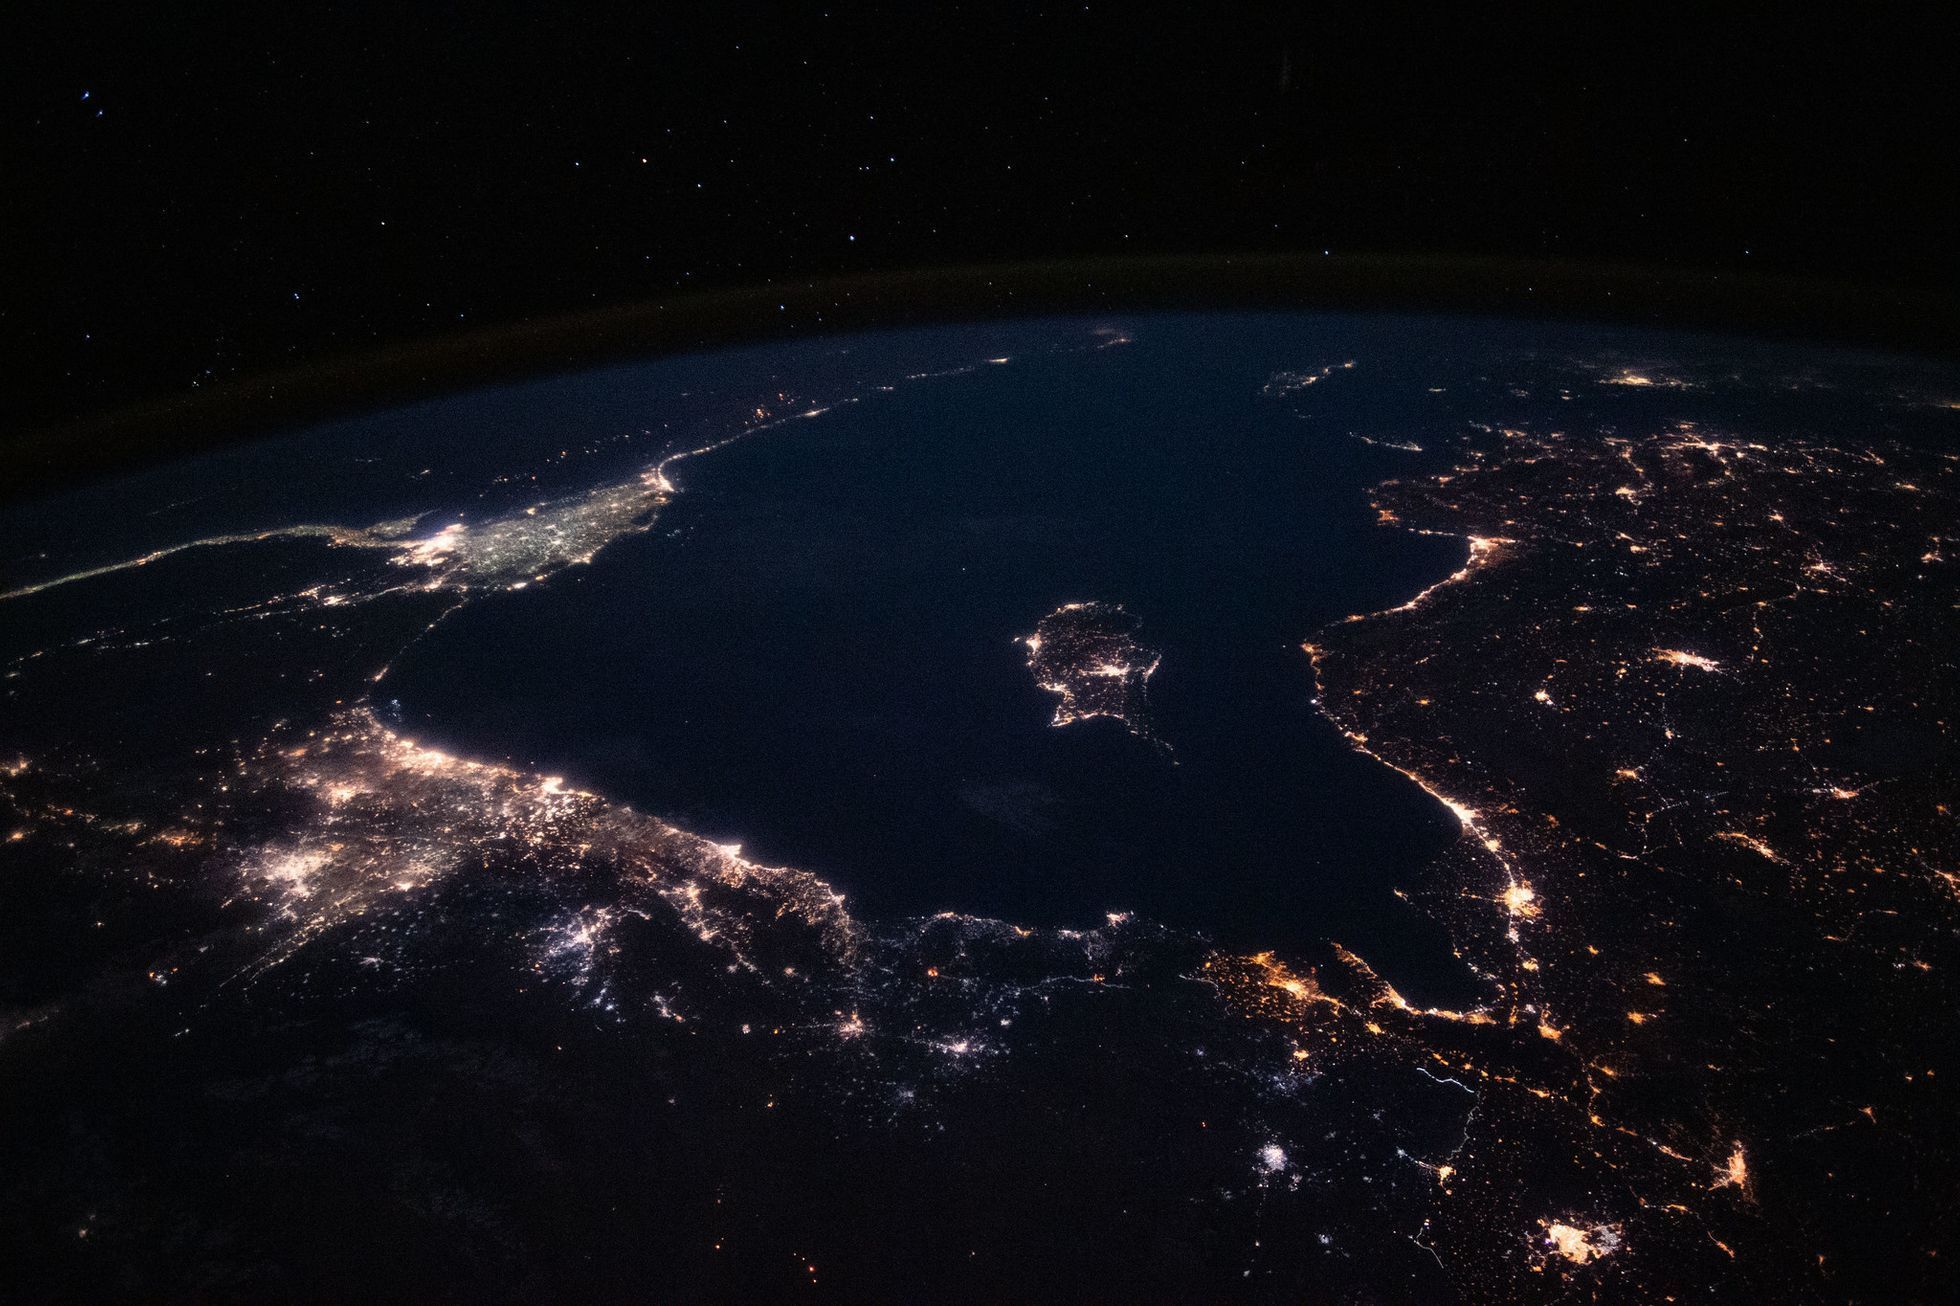 фото ночной земли из космоса высокого разрешения